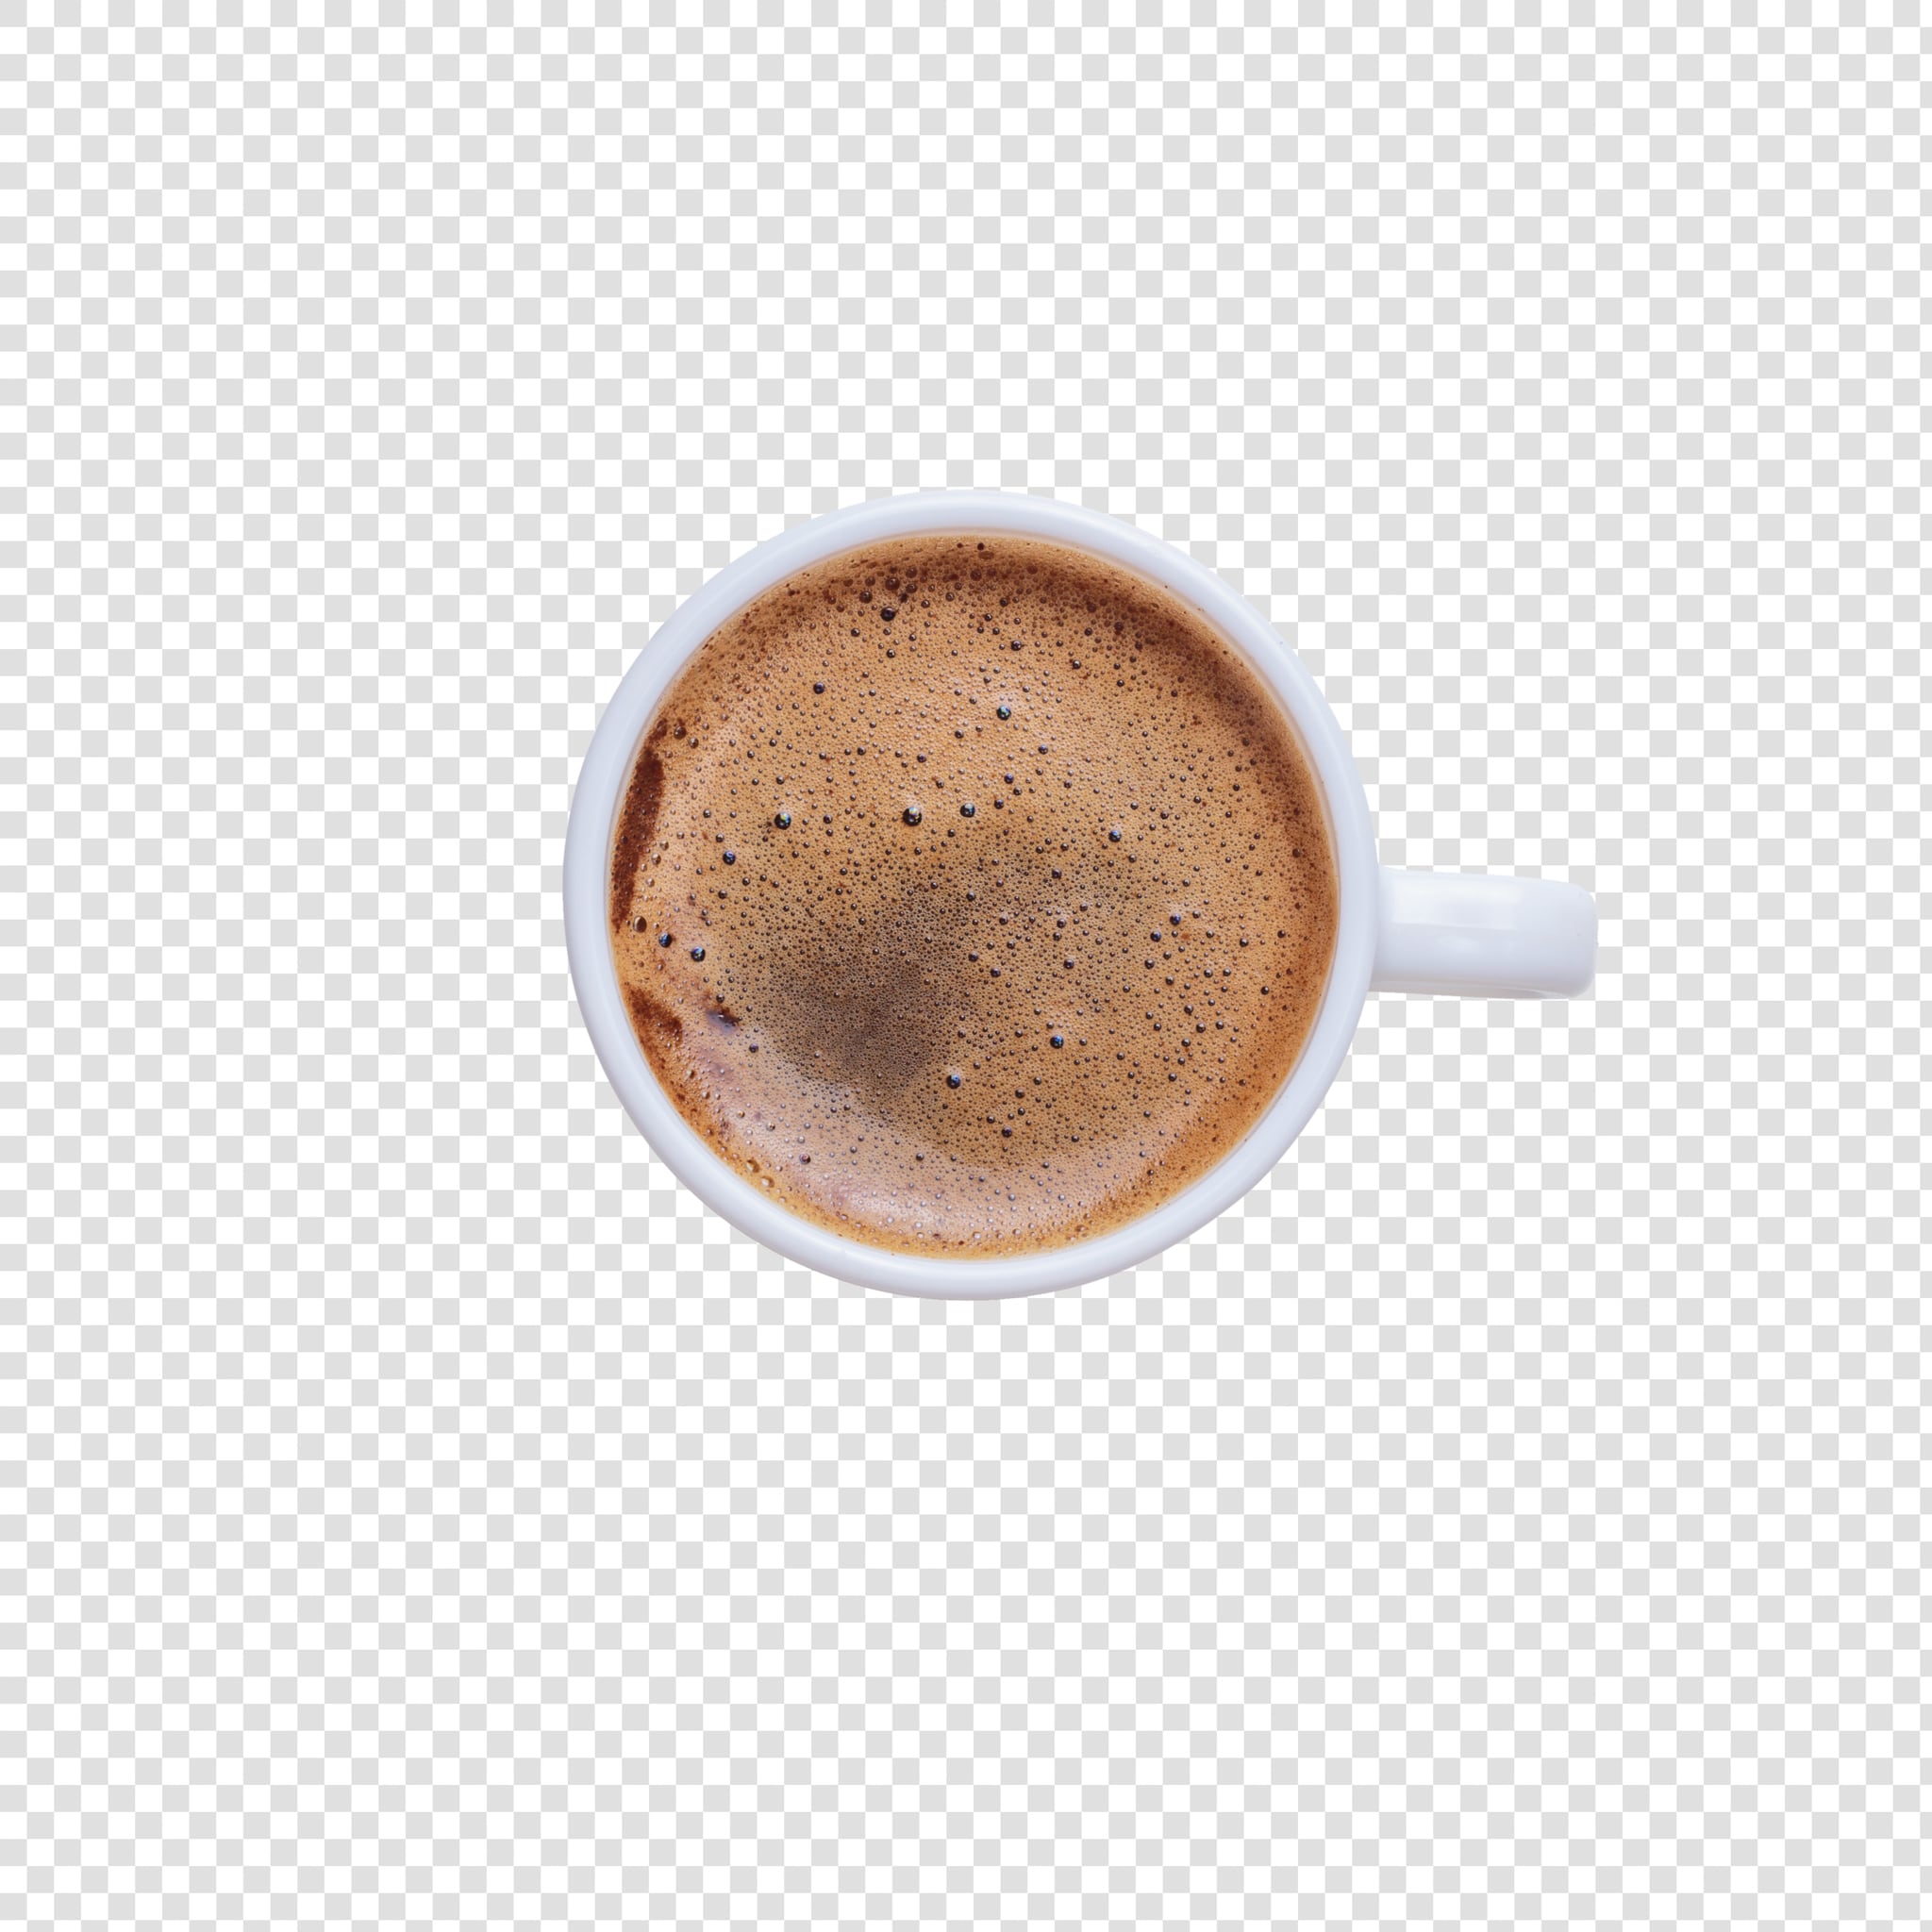 Coffee PSD layered image